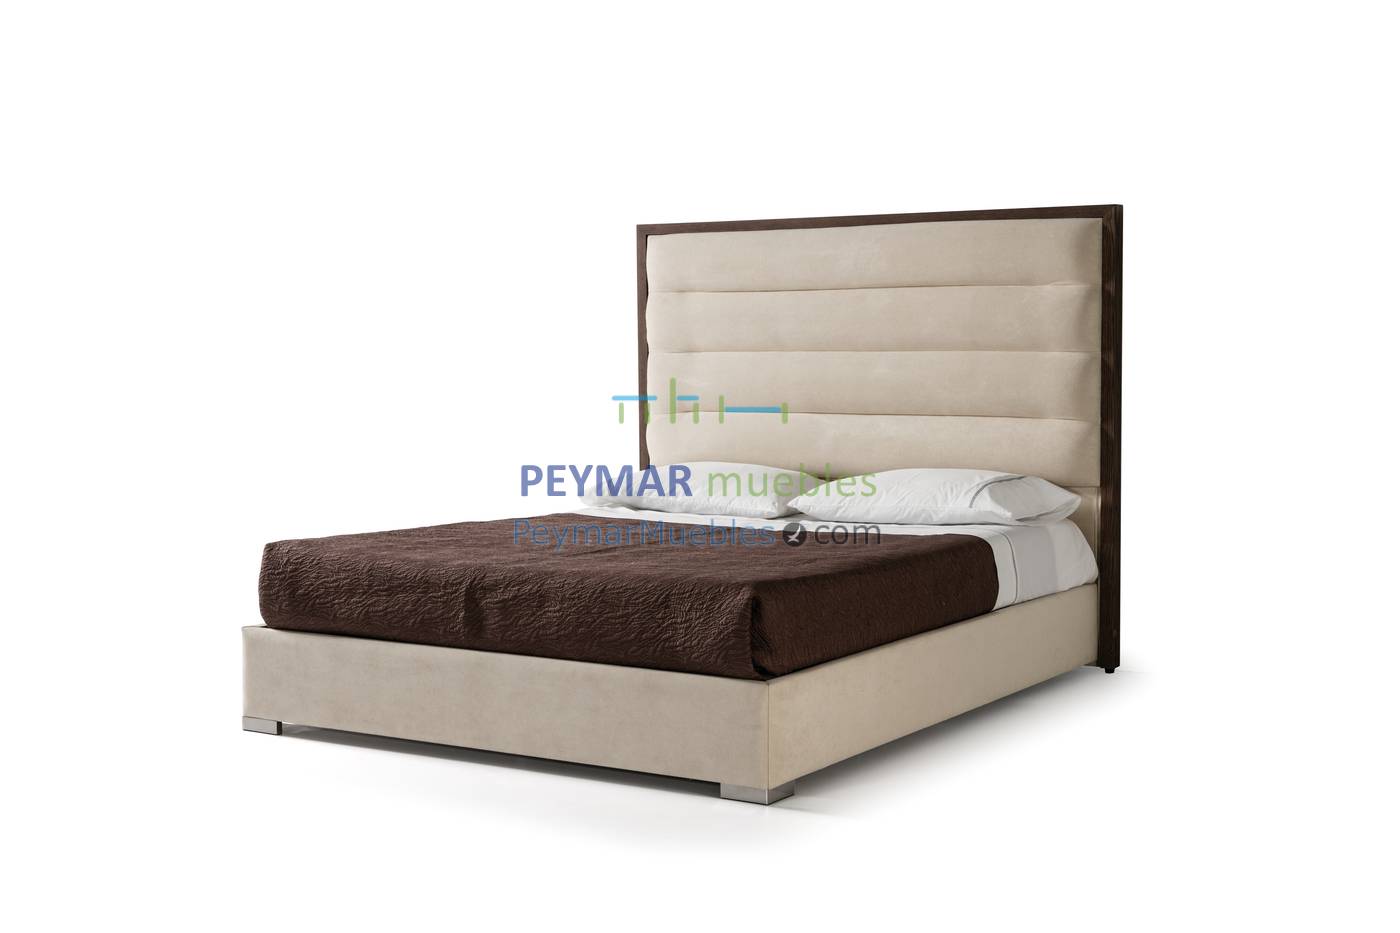 Cama con bañera fija tapizada en polipiel, tela o terciopelo, para cama de 150, 160 o 180 cm, disponible en varios colores.